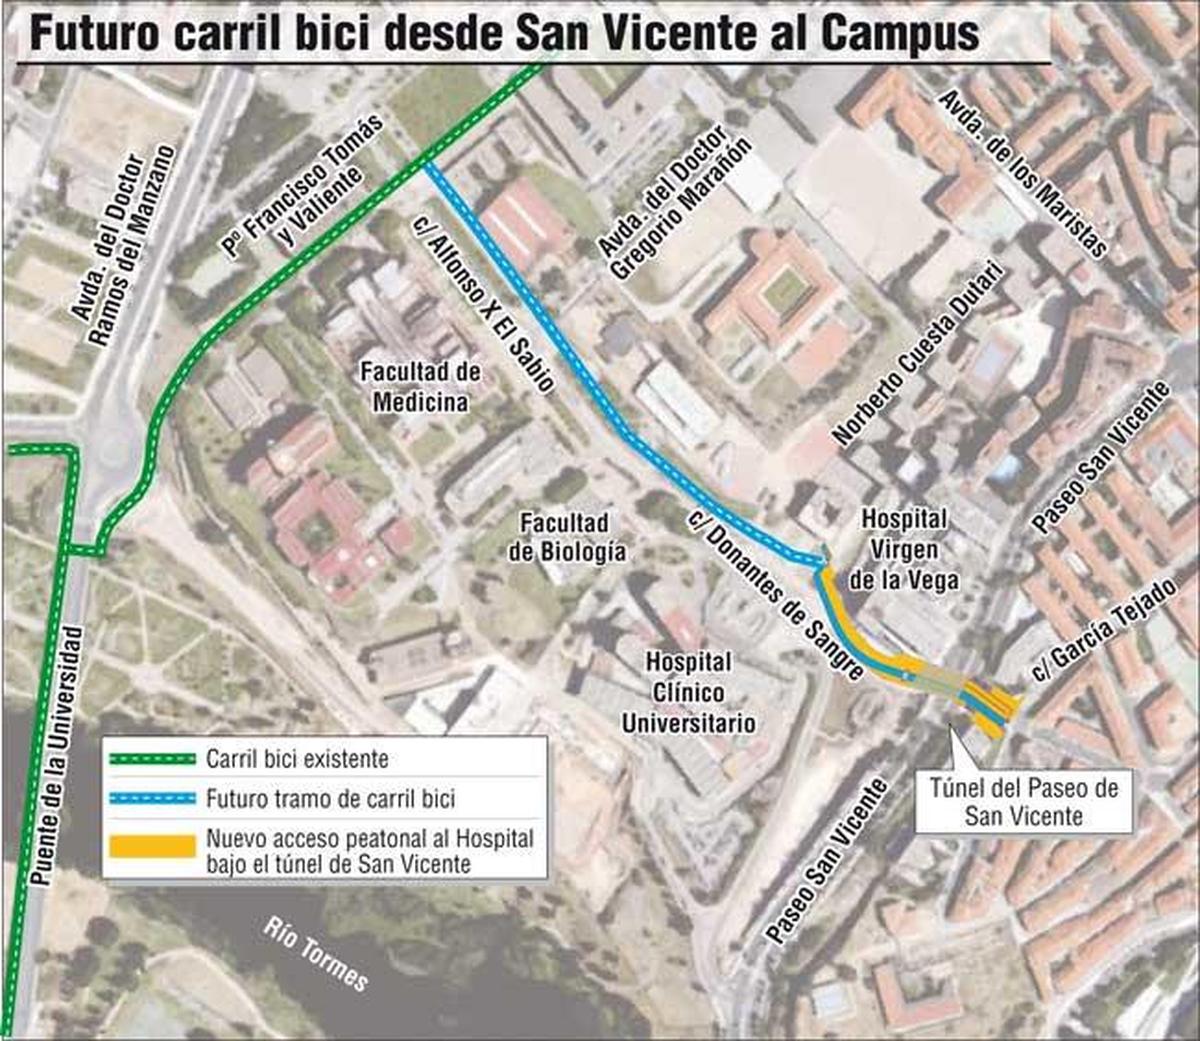 El carril bici se ampliará desde el Campus hasta las puertas del casco histórico